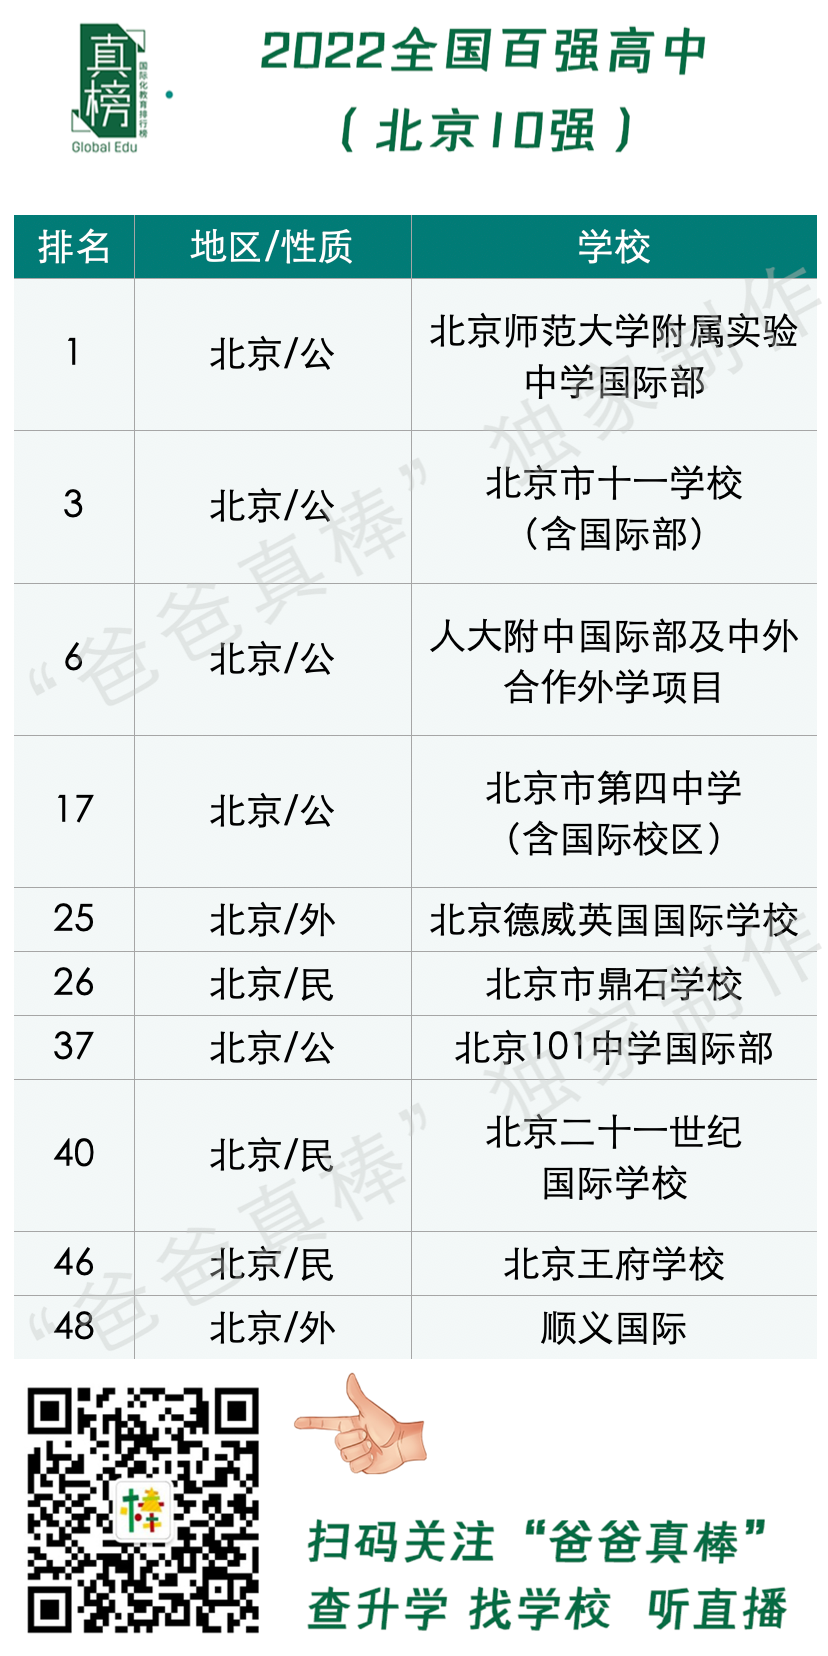 2022中国百强高中海外大学升学榜 - 深国交英方向排名第1 整体排名第6  数据 排名 第21张